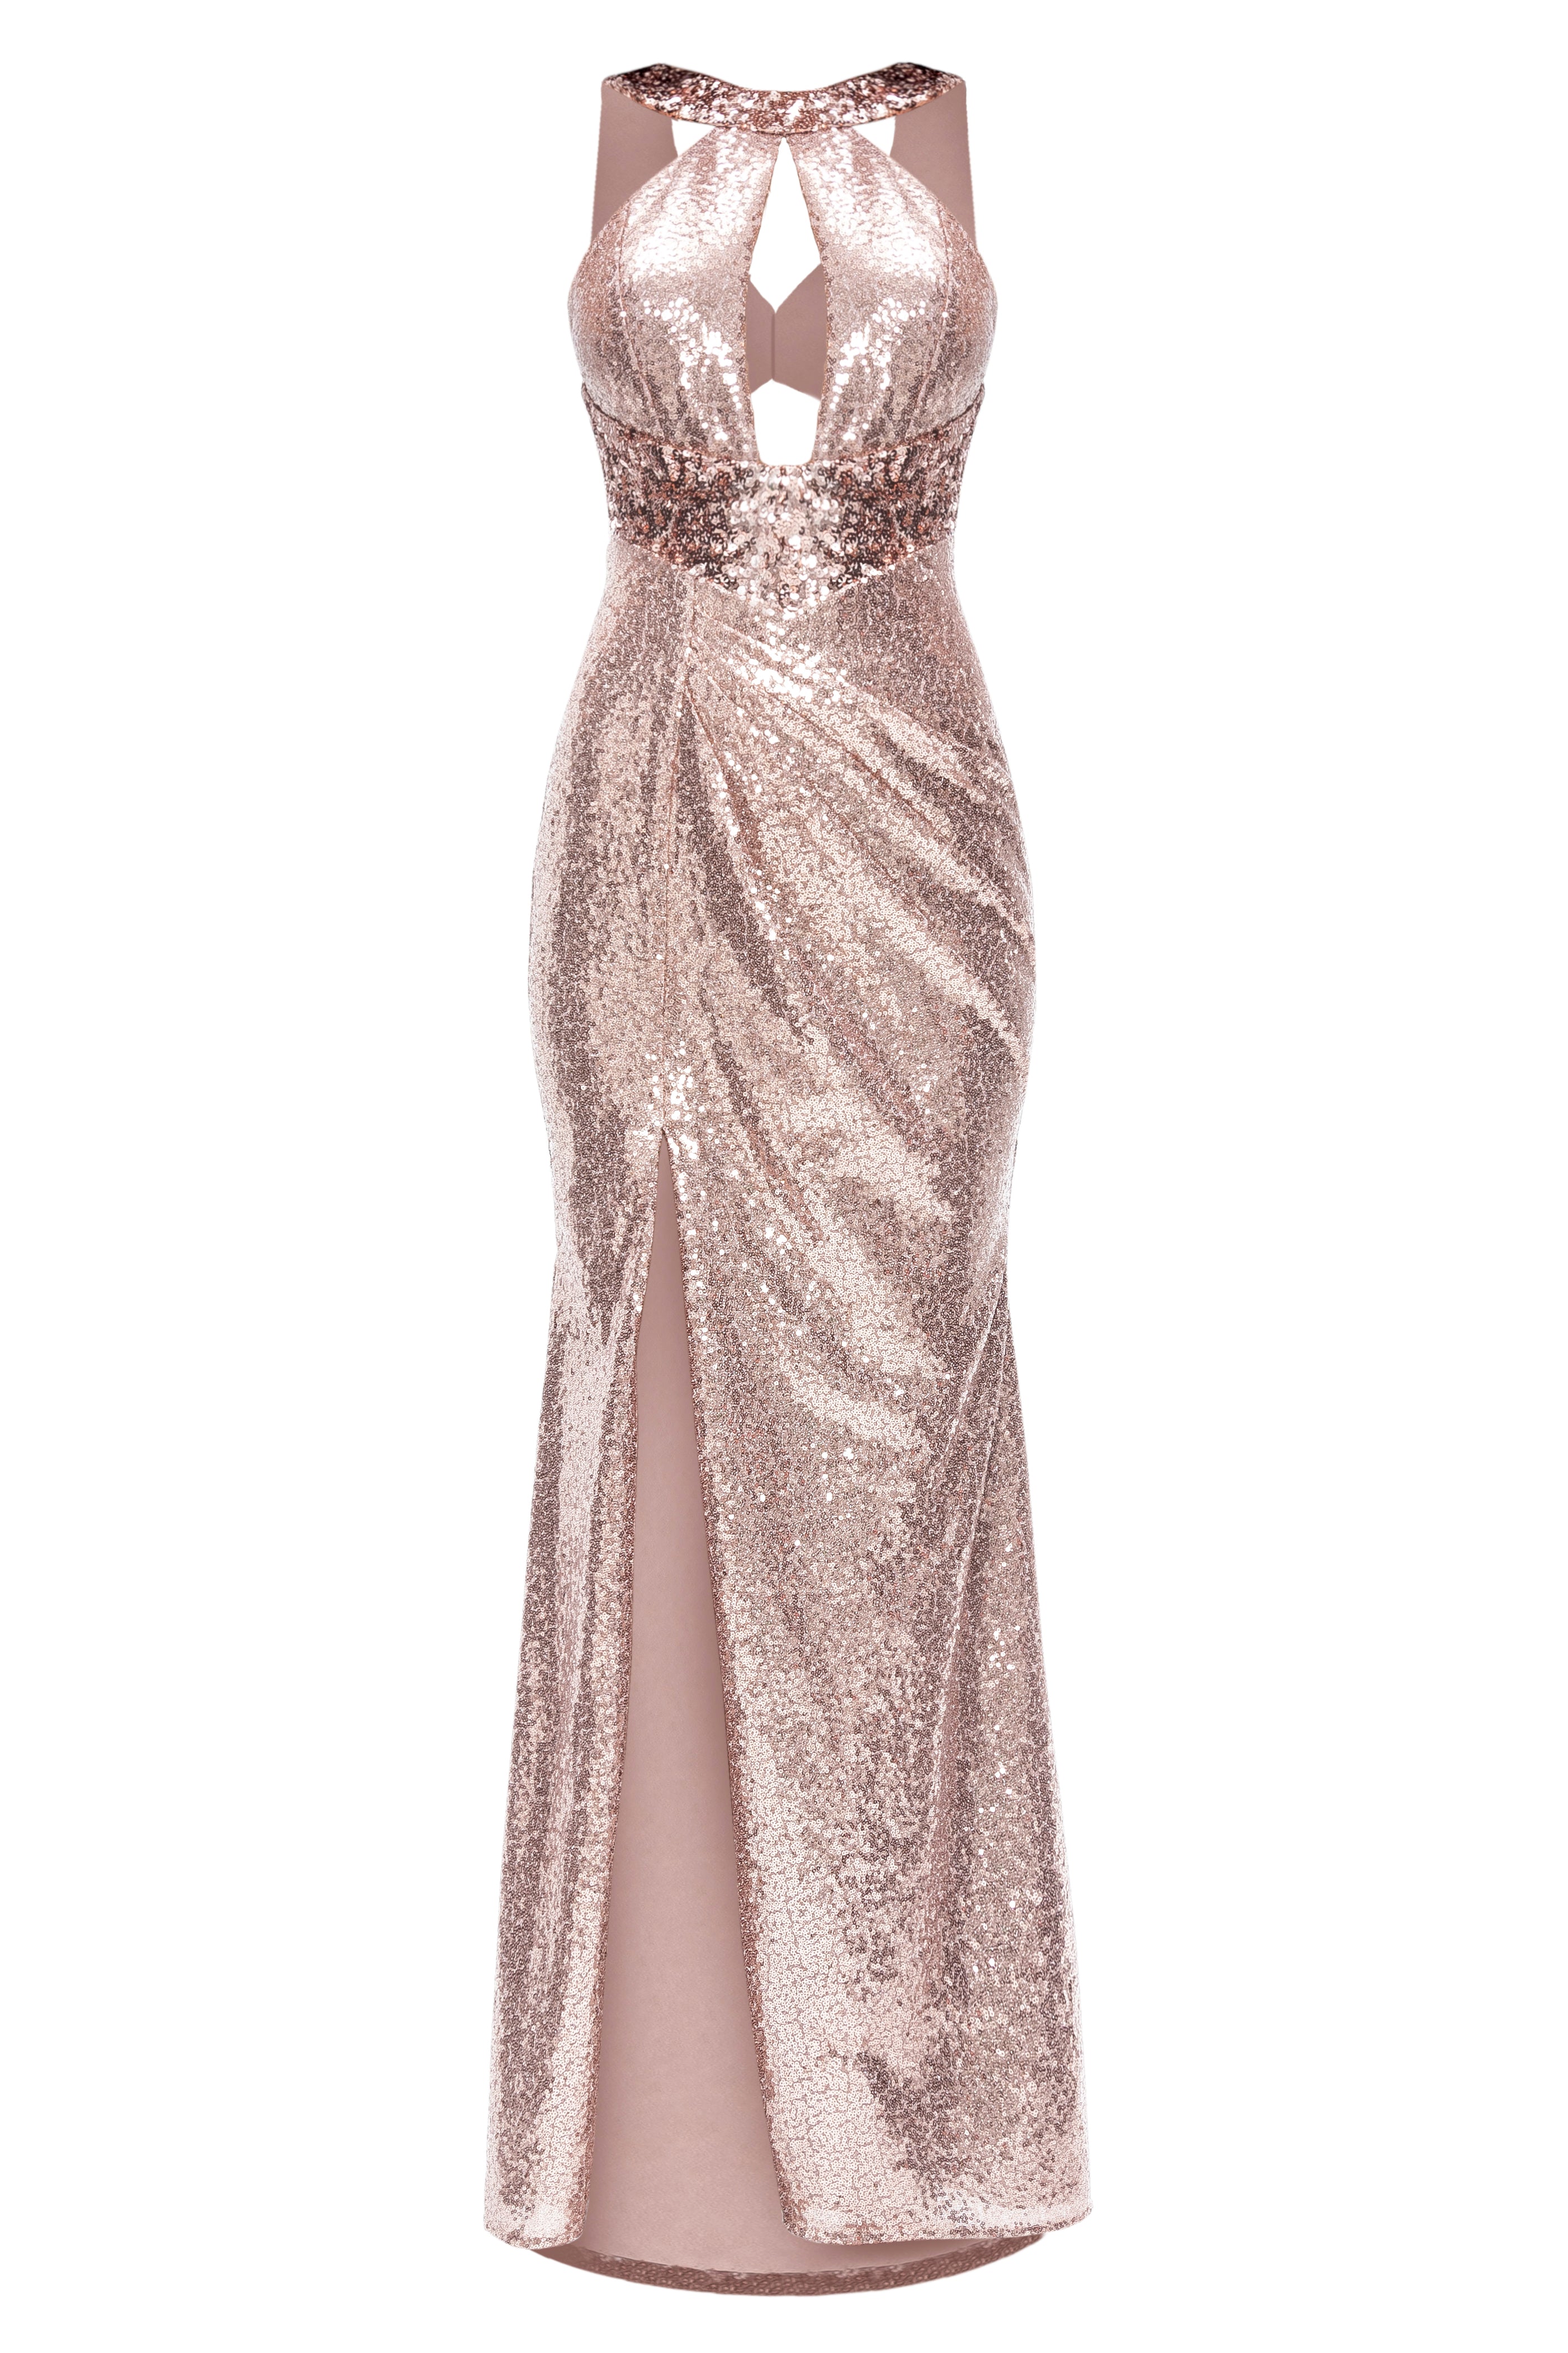 Suknia wieczorowa Casadei w kolorze szampańskiego różu